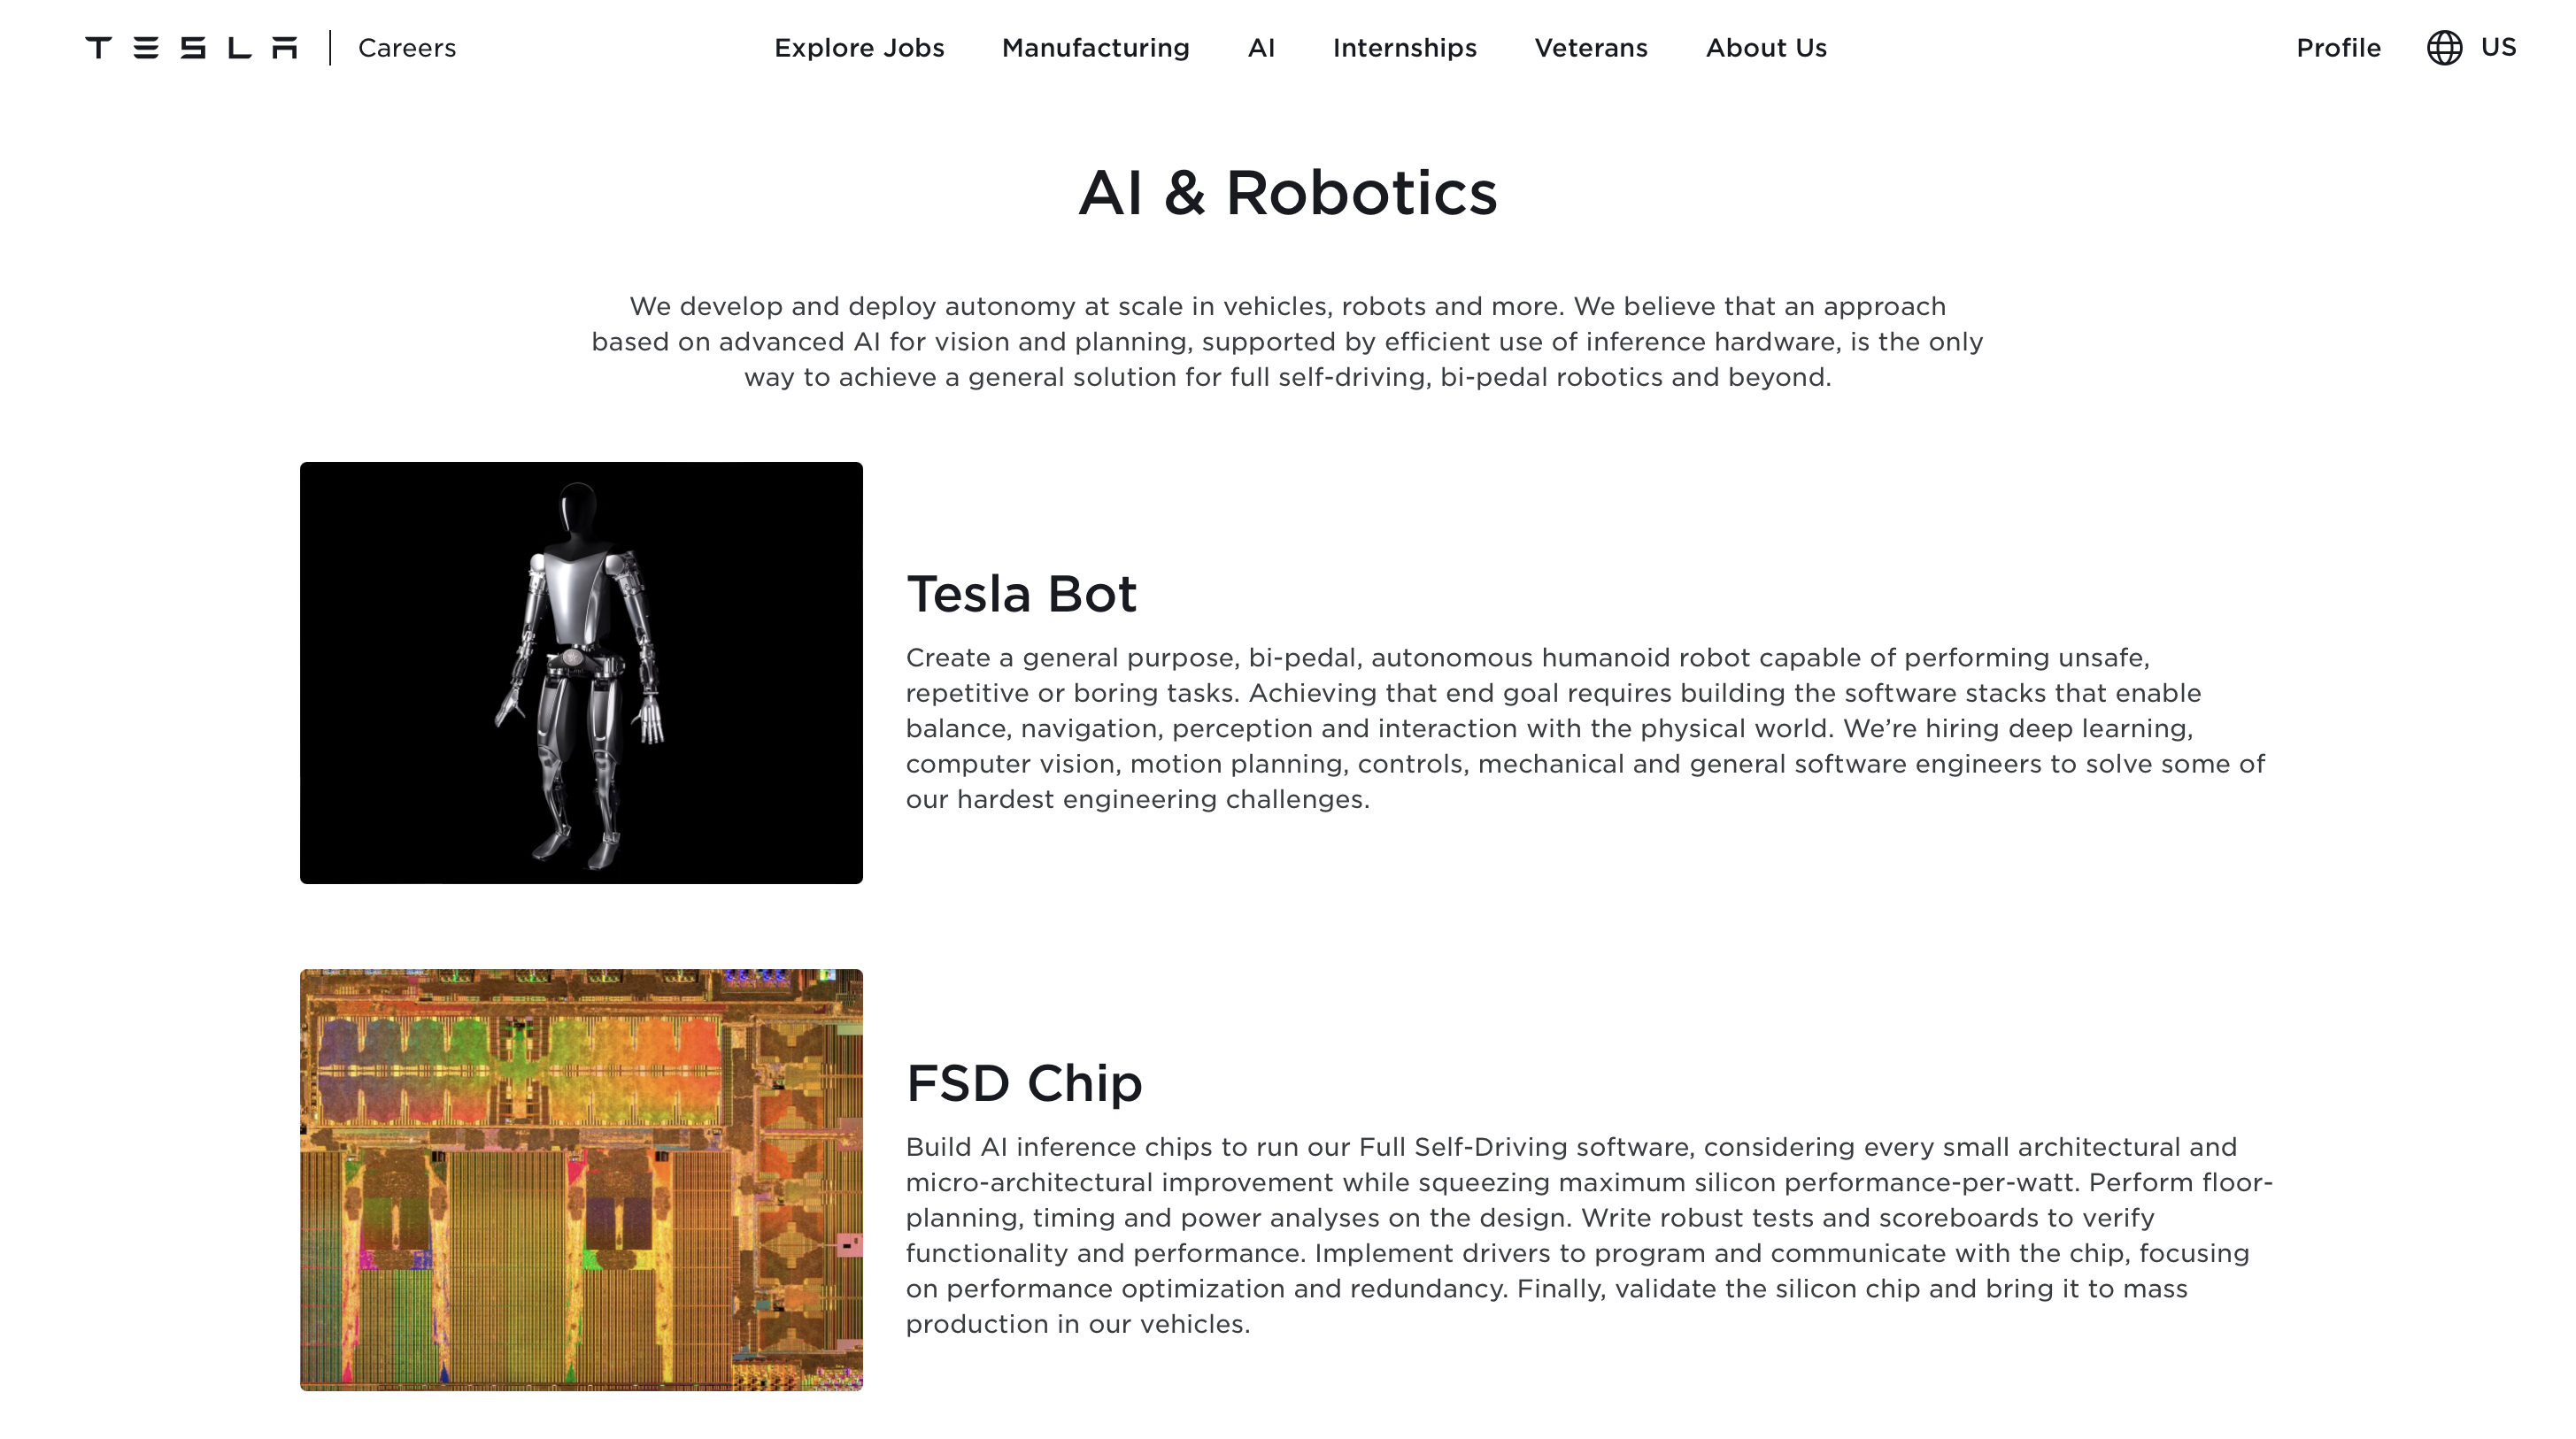 Teslas A.I. Robotics